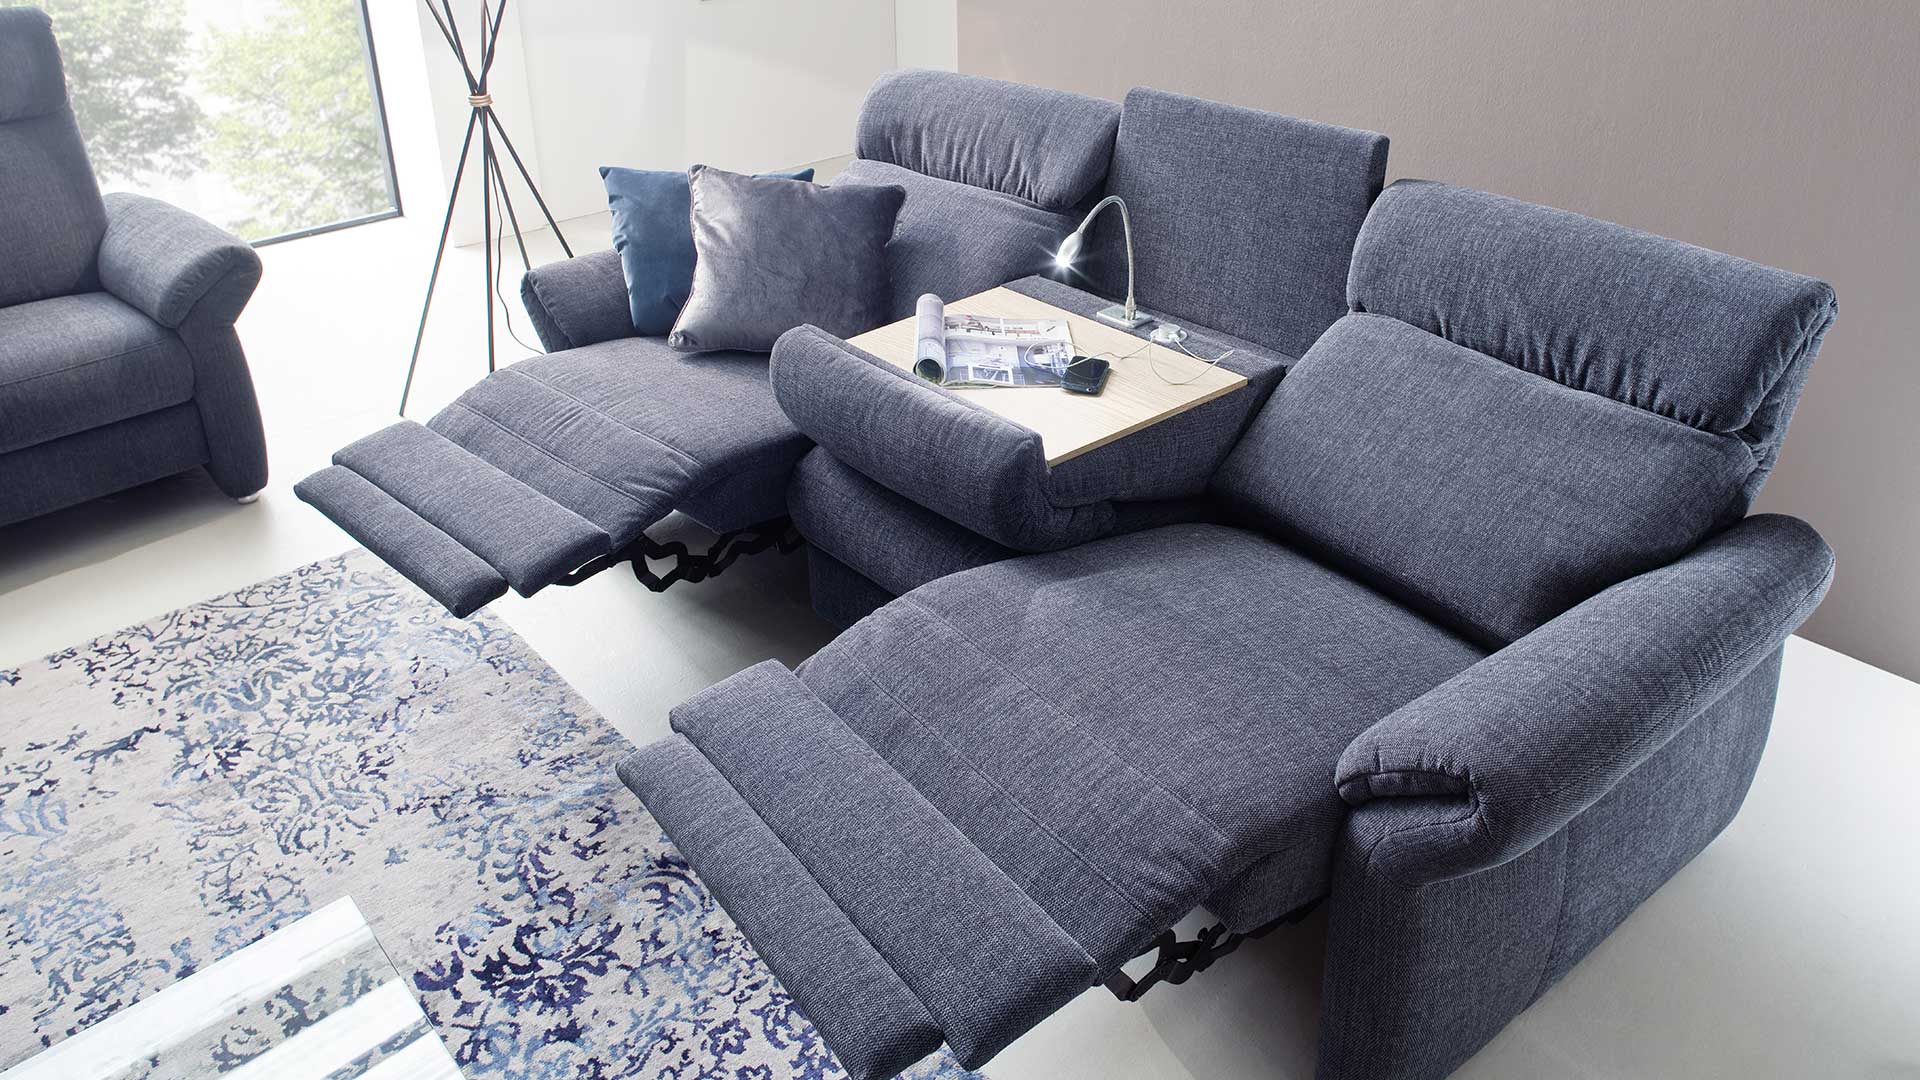 Sofa mit Relaxfunktion, elektrisch verstellbare Fußstützen und Rückenlehnen, dunkelblauer Stoffbezug und Mitteltisch mit Leselampe und USB Anschlüssen